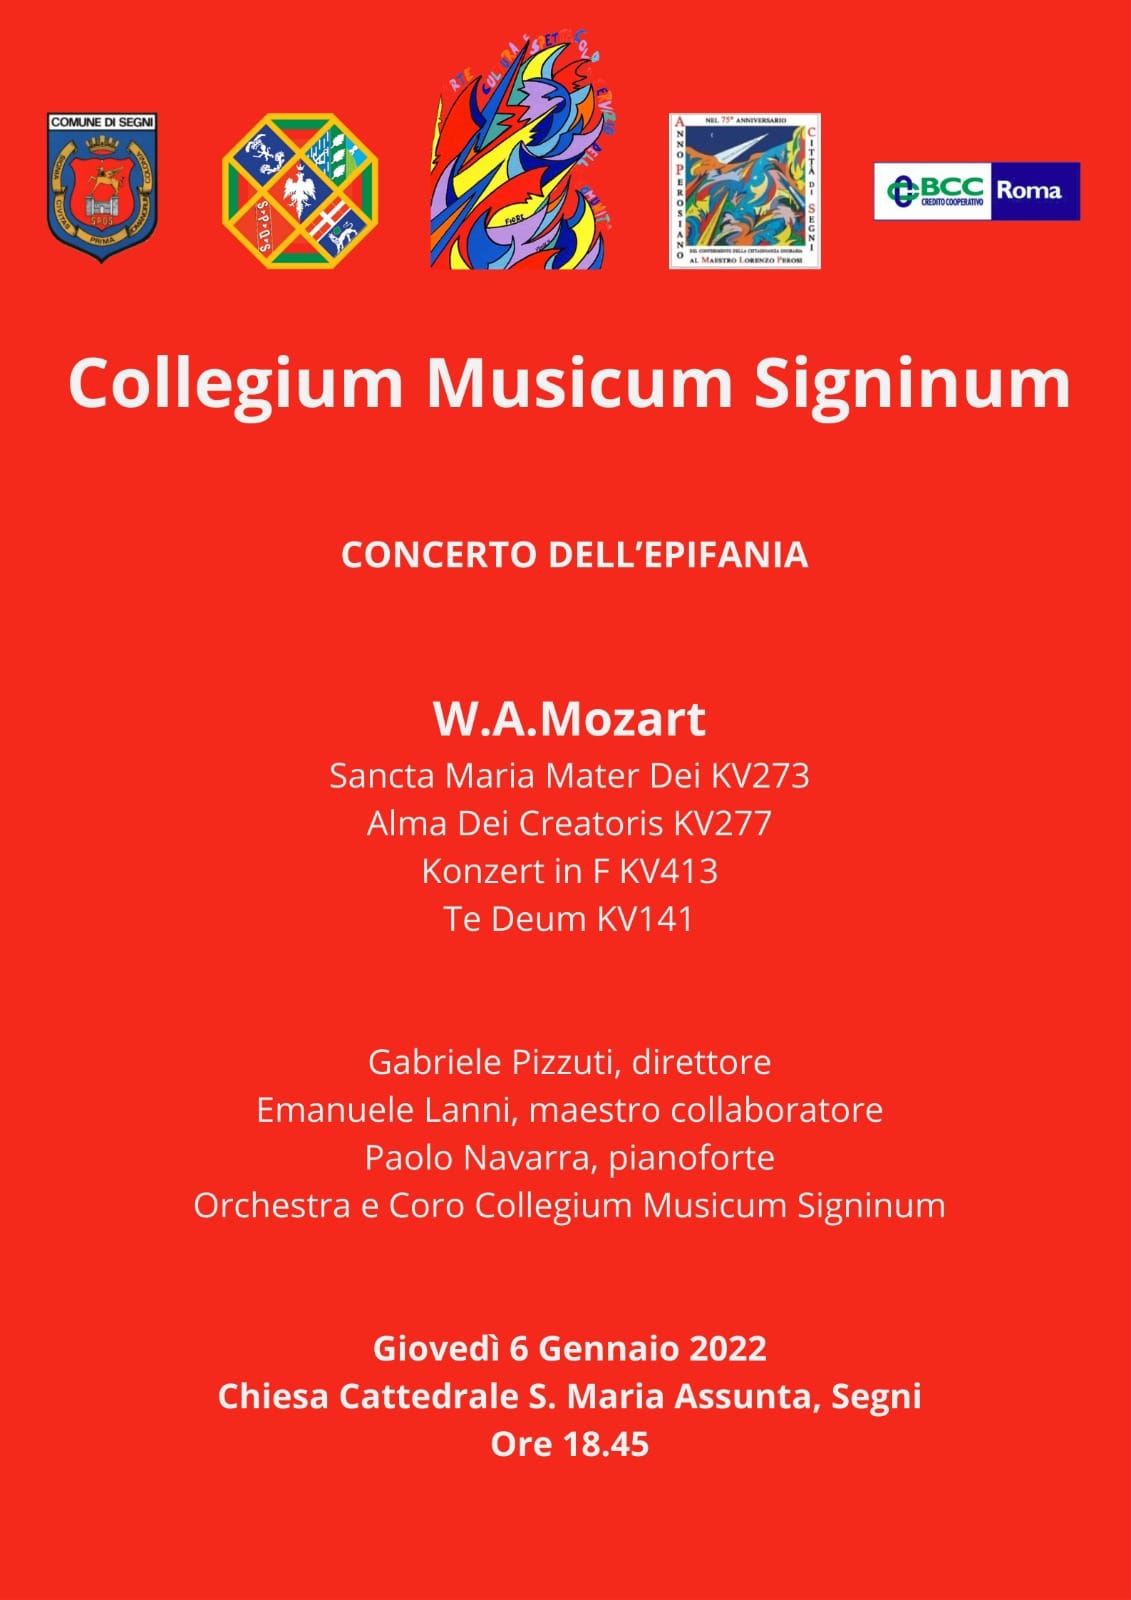 collegium-musicum-signium-segni